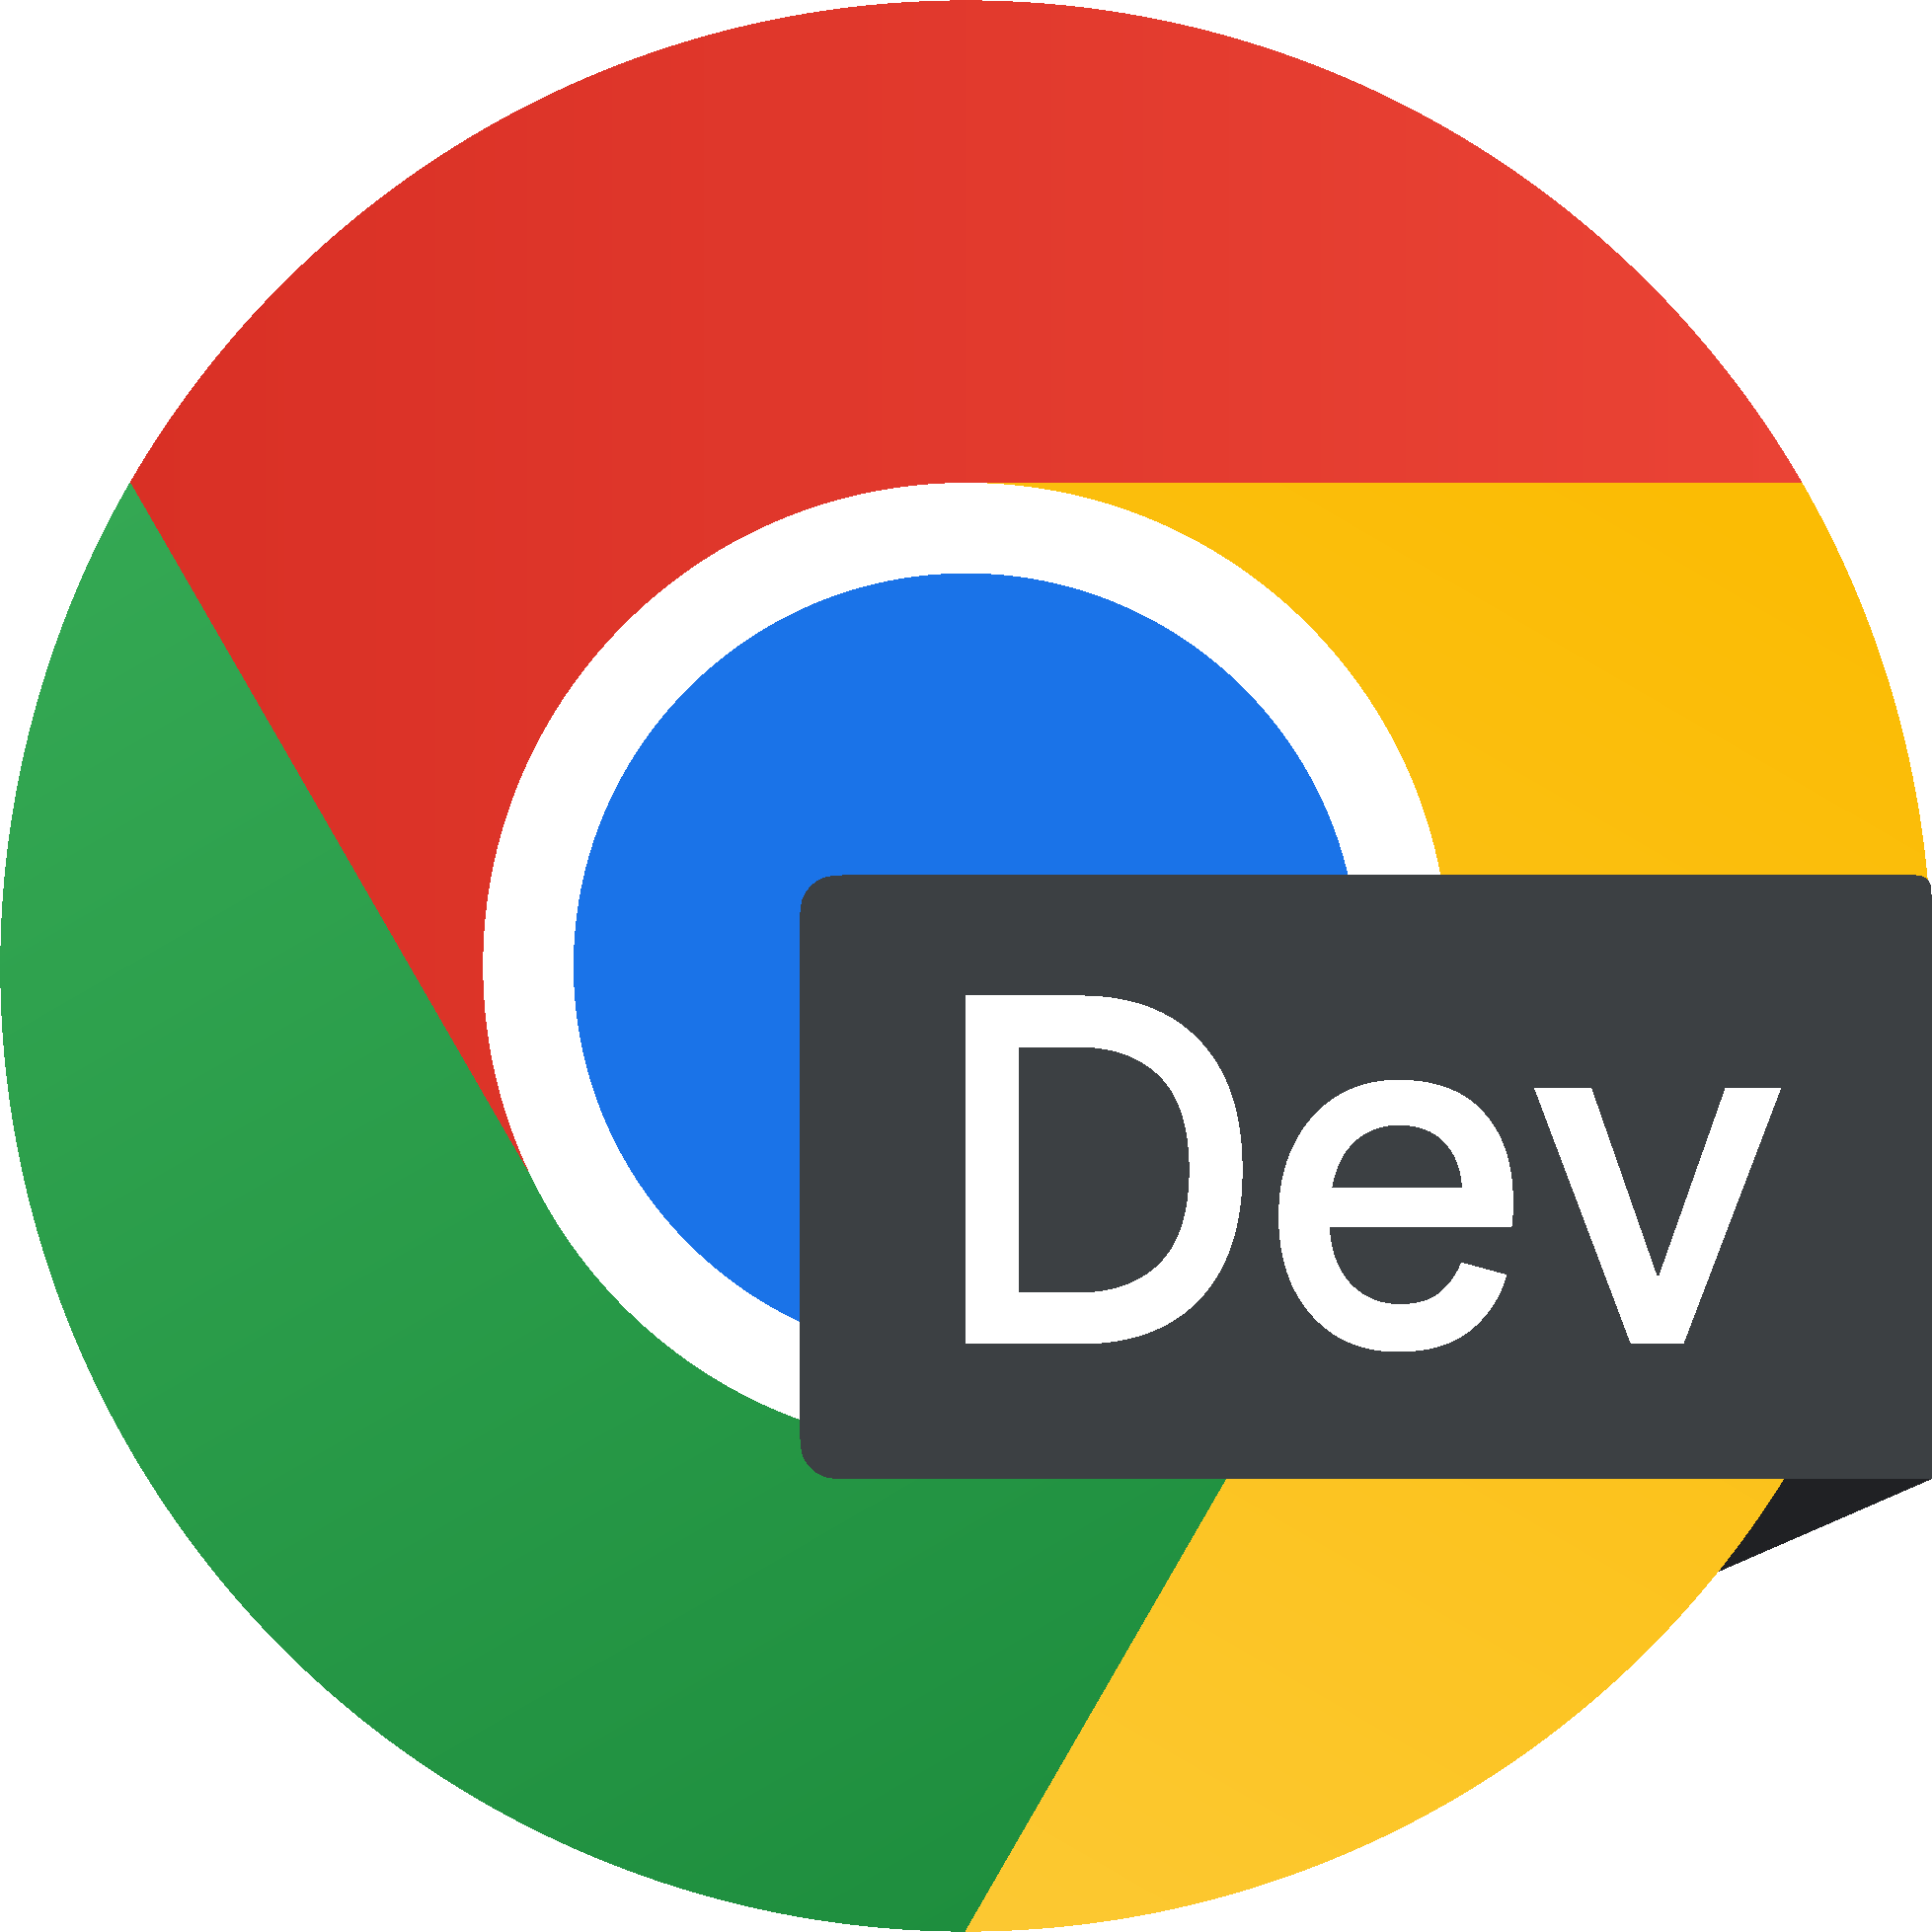 הלוגו של Chrome פיתוח.